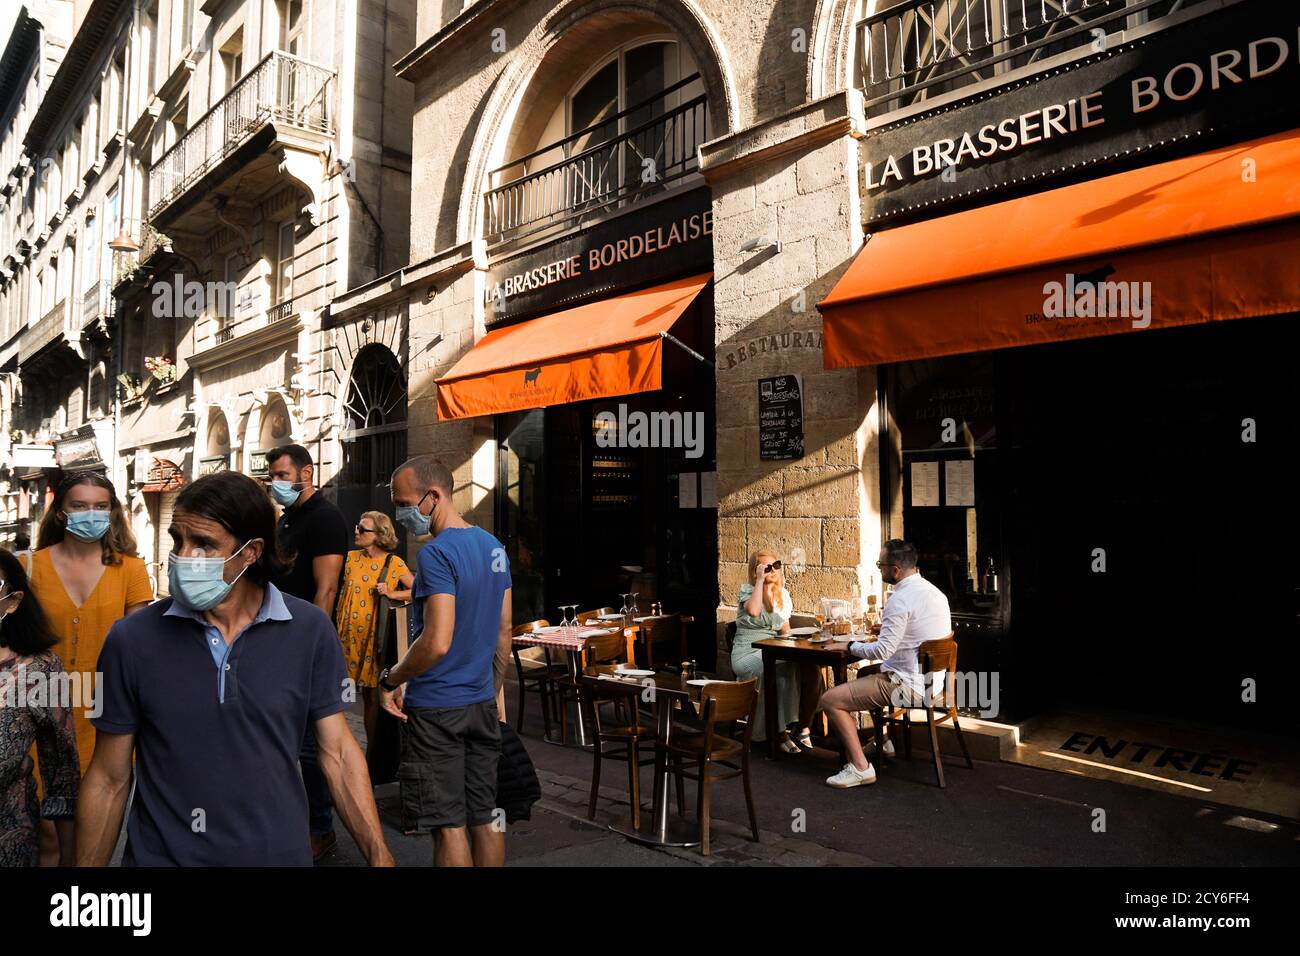 Bordeaux - 08/27/2020: Coppia senza maschera di protezione godendo di una cena sui tavoli all'aperto mentre la gente passa da Foto Stock